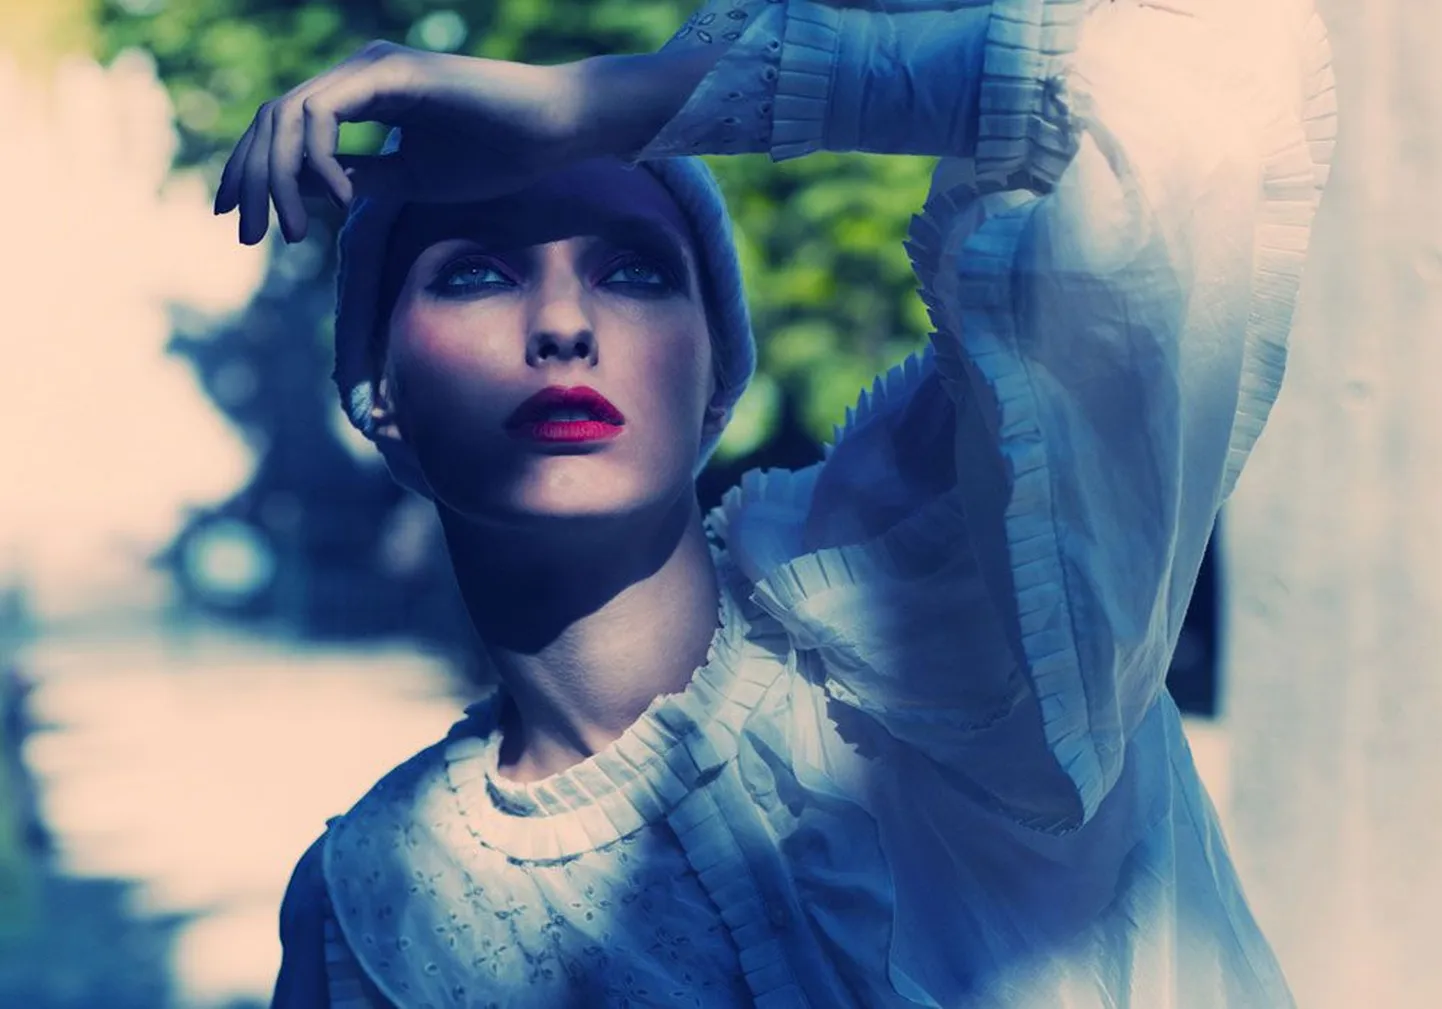 Лицо Таллиннской недели моды — эстонская топ-модель Ханнеле Туру, чьи фотографии можно увидеть в модных журналах Vogue, Glamour и Vanity Fair.